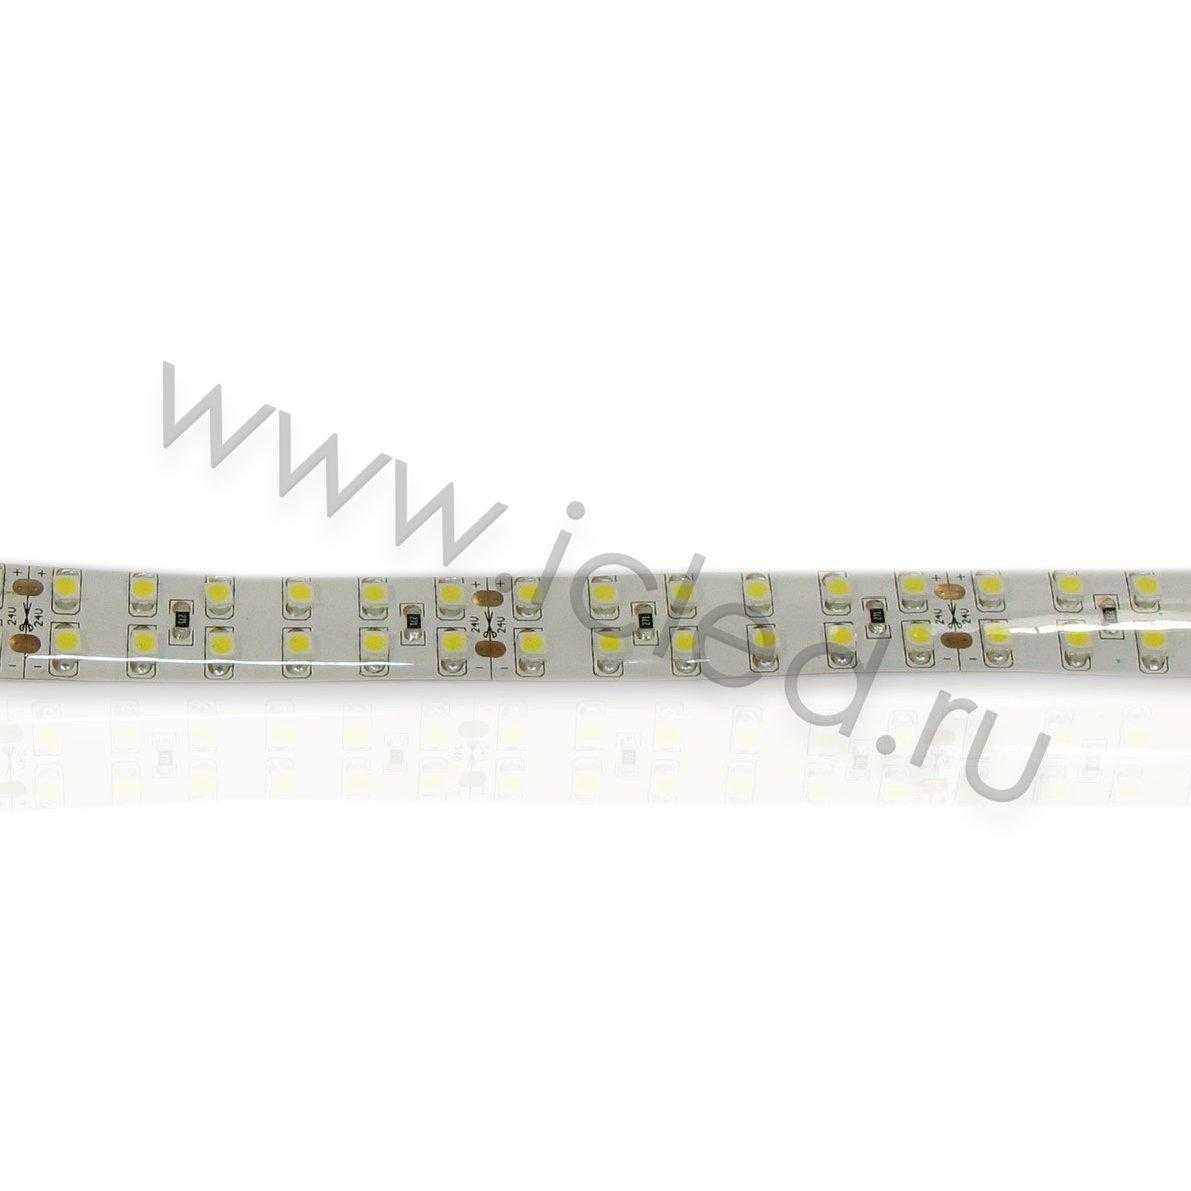 Влагозащищенные светодиодные ленты Светодиодная лента Standart PRO class, 3528, 240 led/m, Warm White, 24V, IP65 Icled